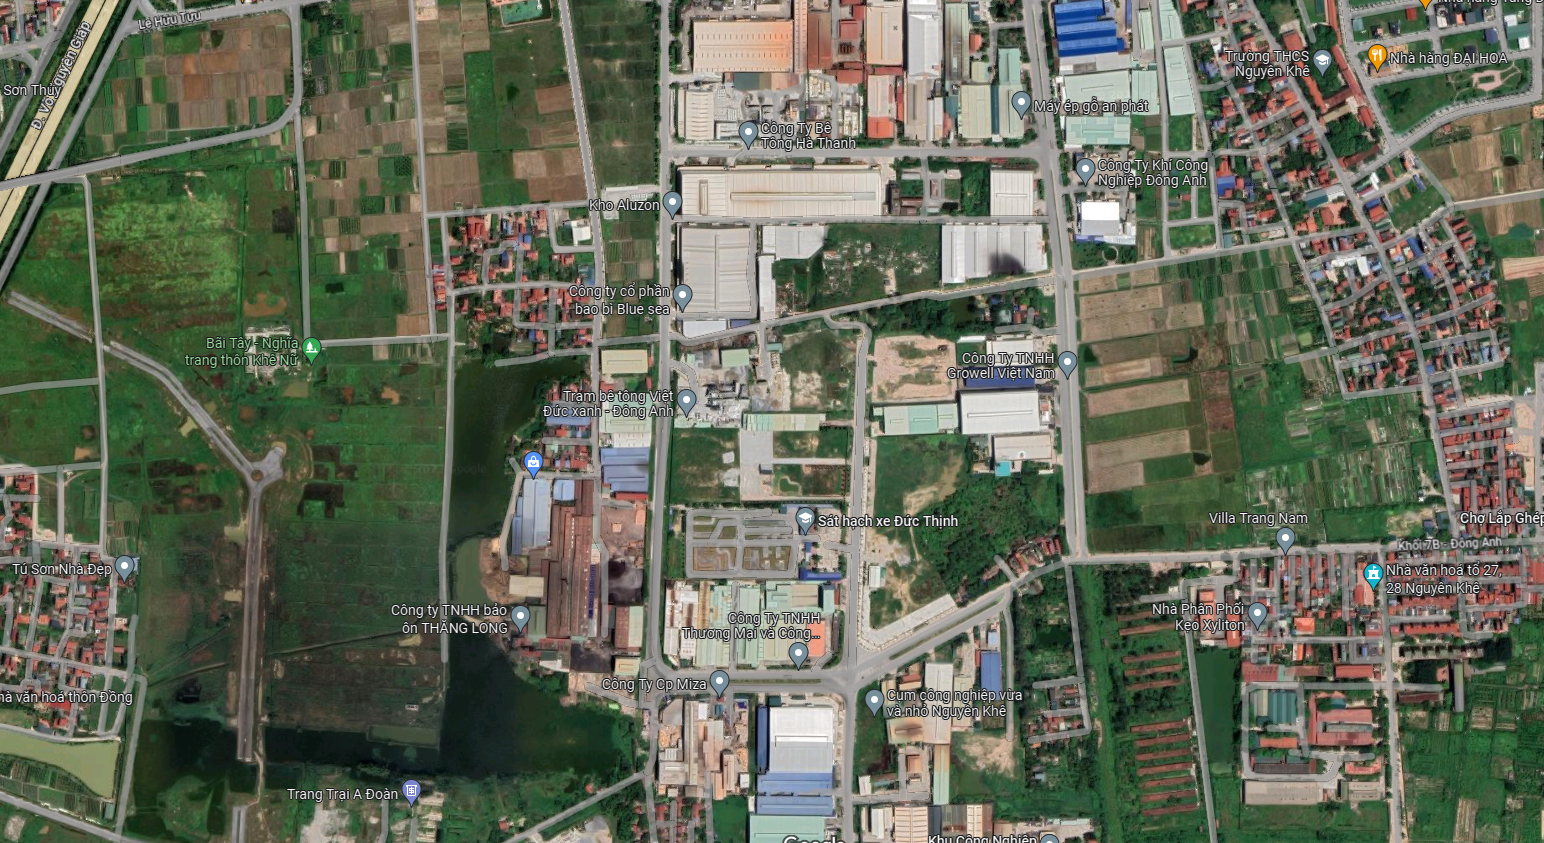 Bán 10,000 m2 đất trong cụm công nghiệp tại Đông Anh, Hà Nội